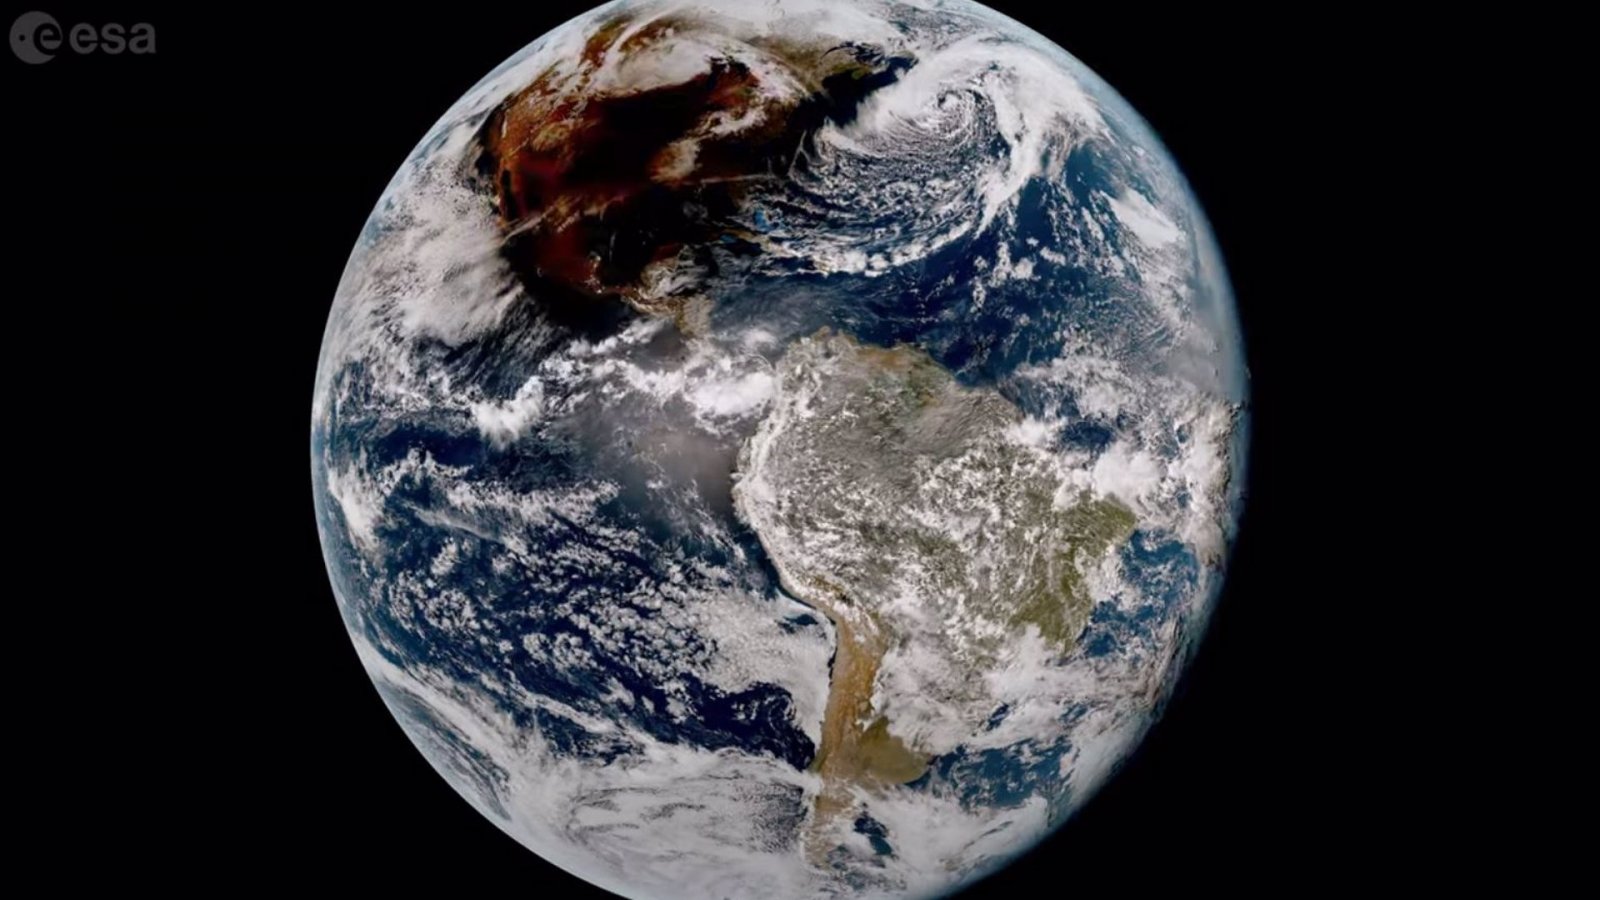 Eclipse solar del 8 de abril desde el espacio. NASA